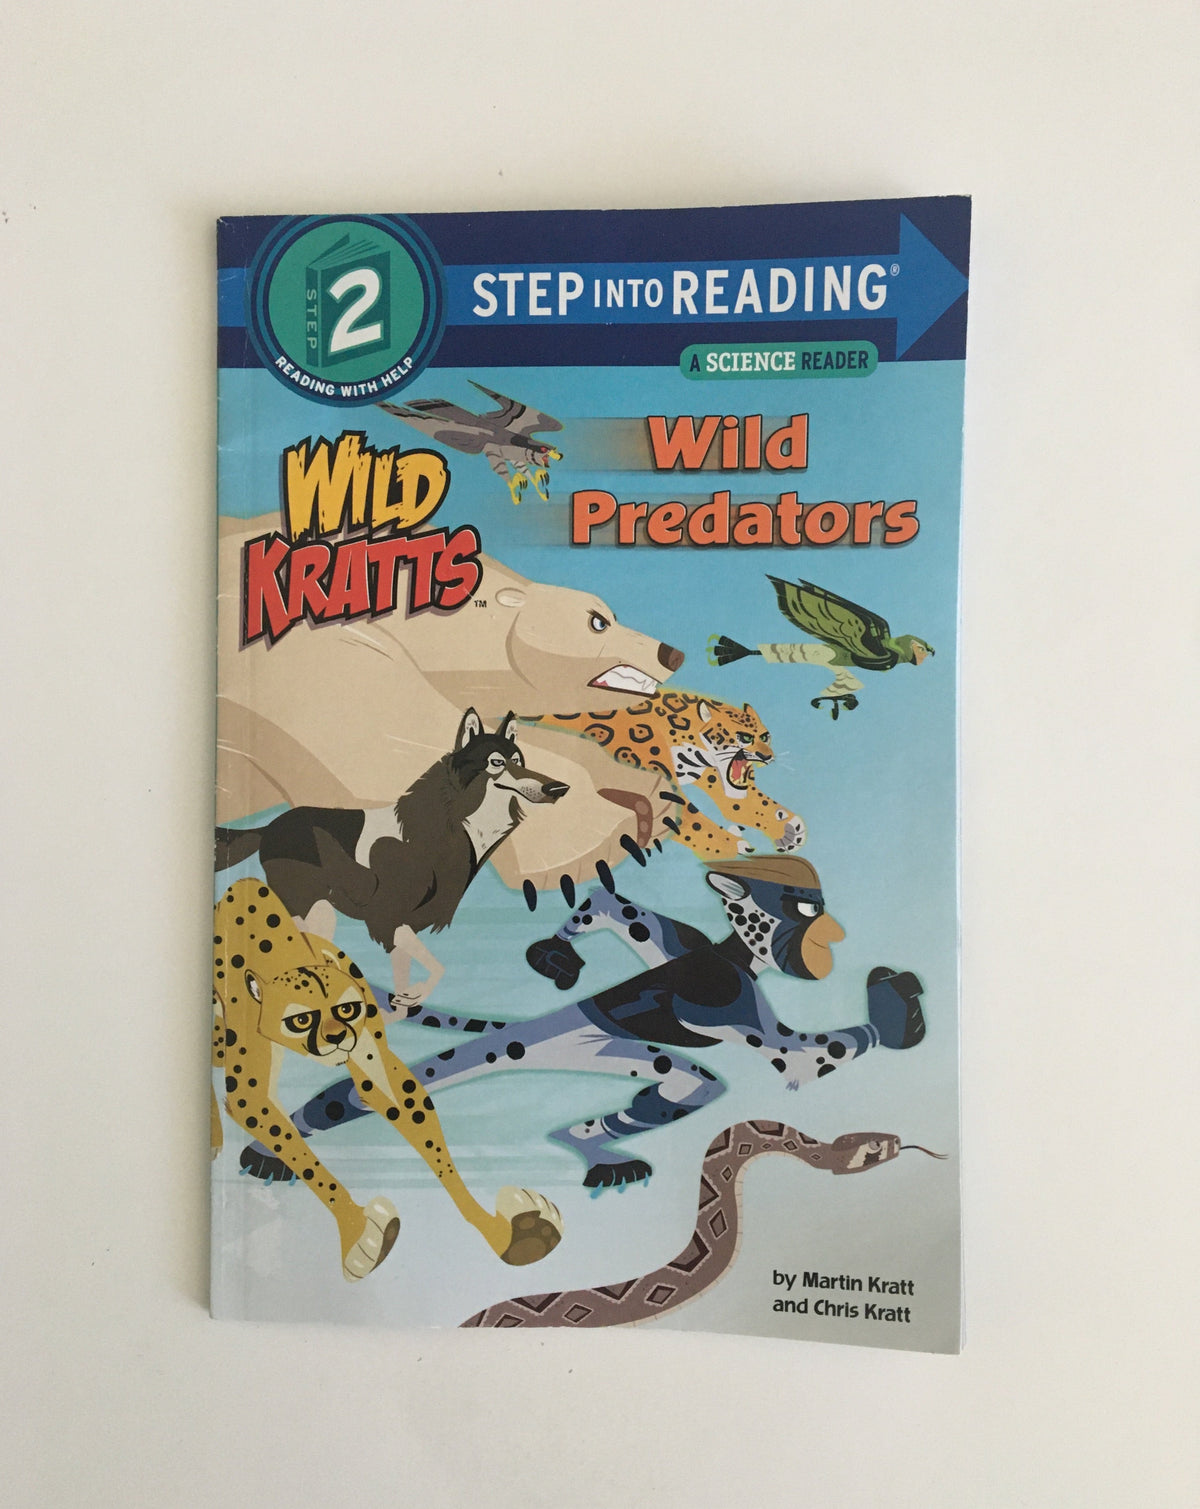 Wild Kratts: Wild Predators by the Kratt Brothers